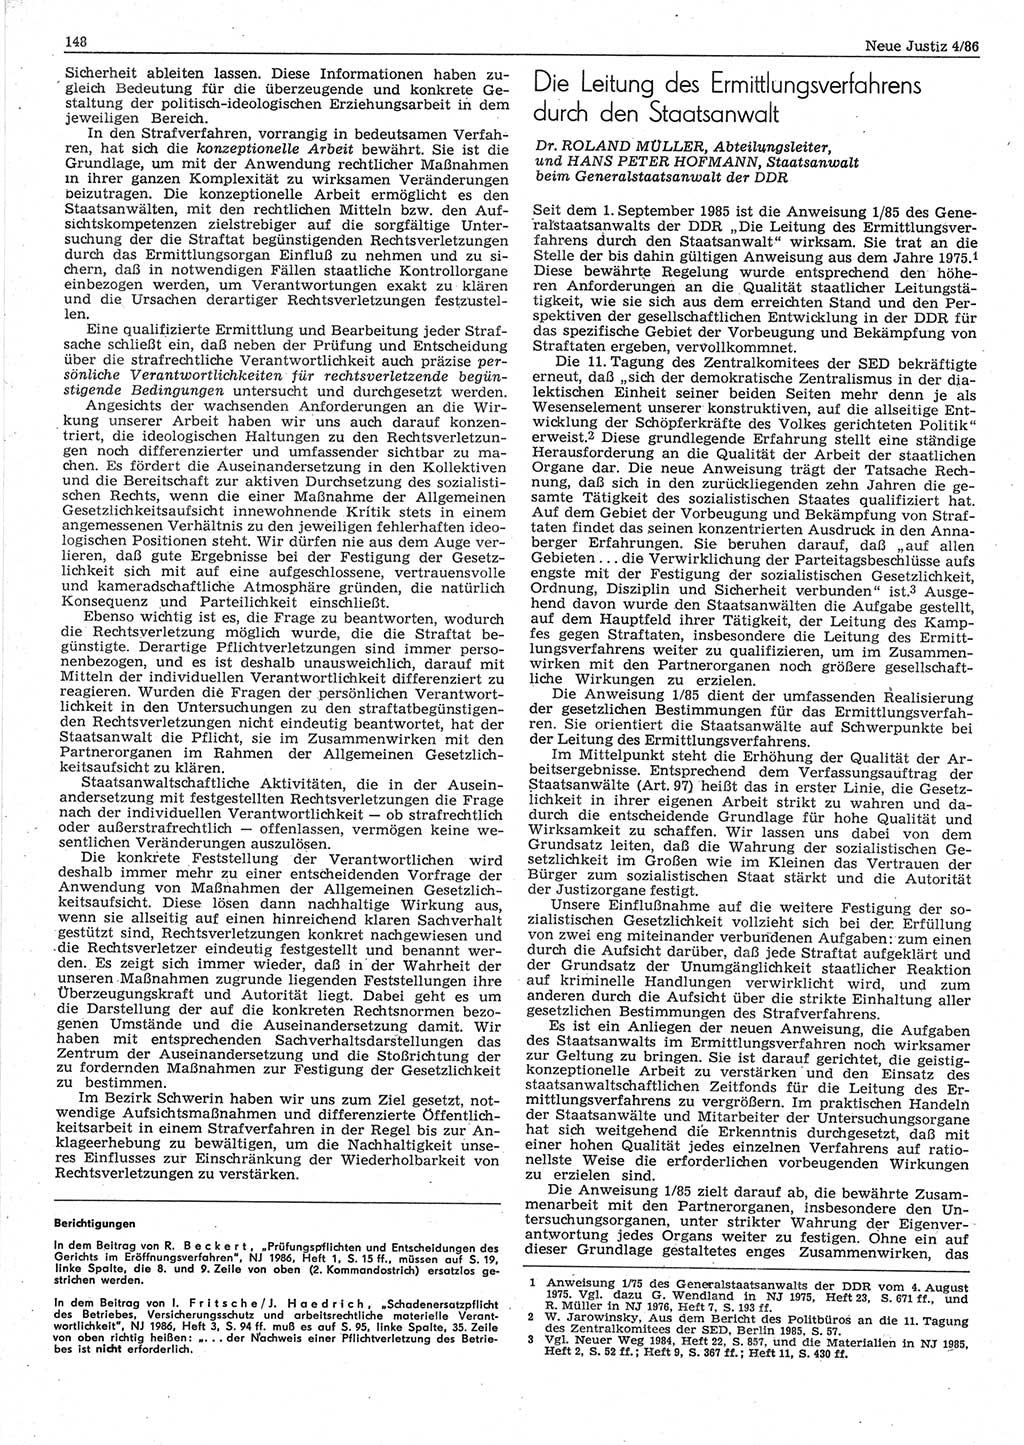 Neue Justiz (NJ), Zeitschrift für sozialistisches Recht und Gesetzlichkeit [Deutsche Demokratische Republik (DDR)], 40. Jahrgang 1986, Seite 148 (NJ DDR 1986, S. 148)